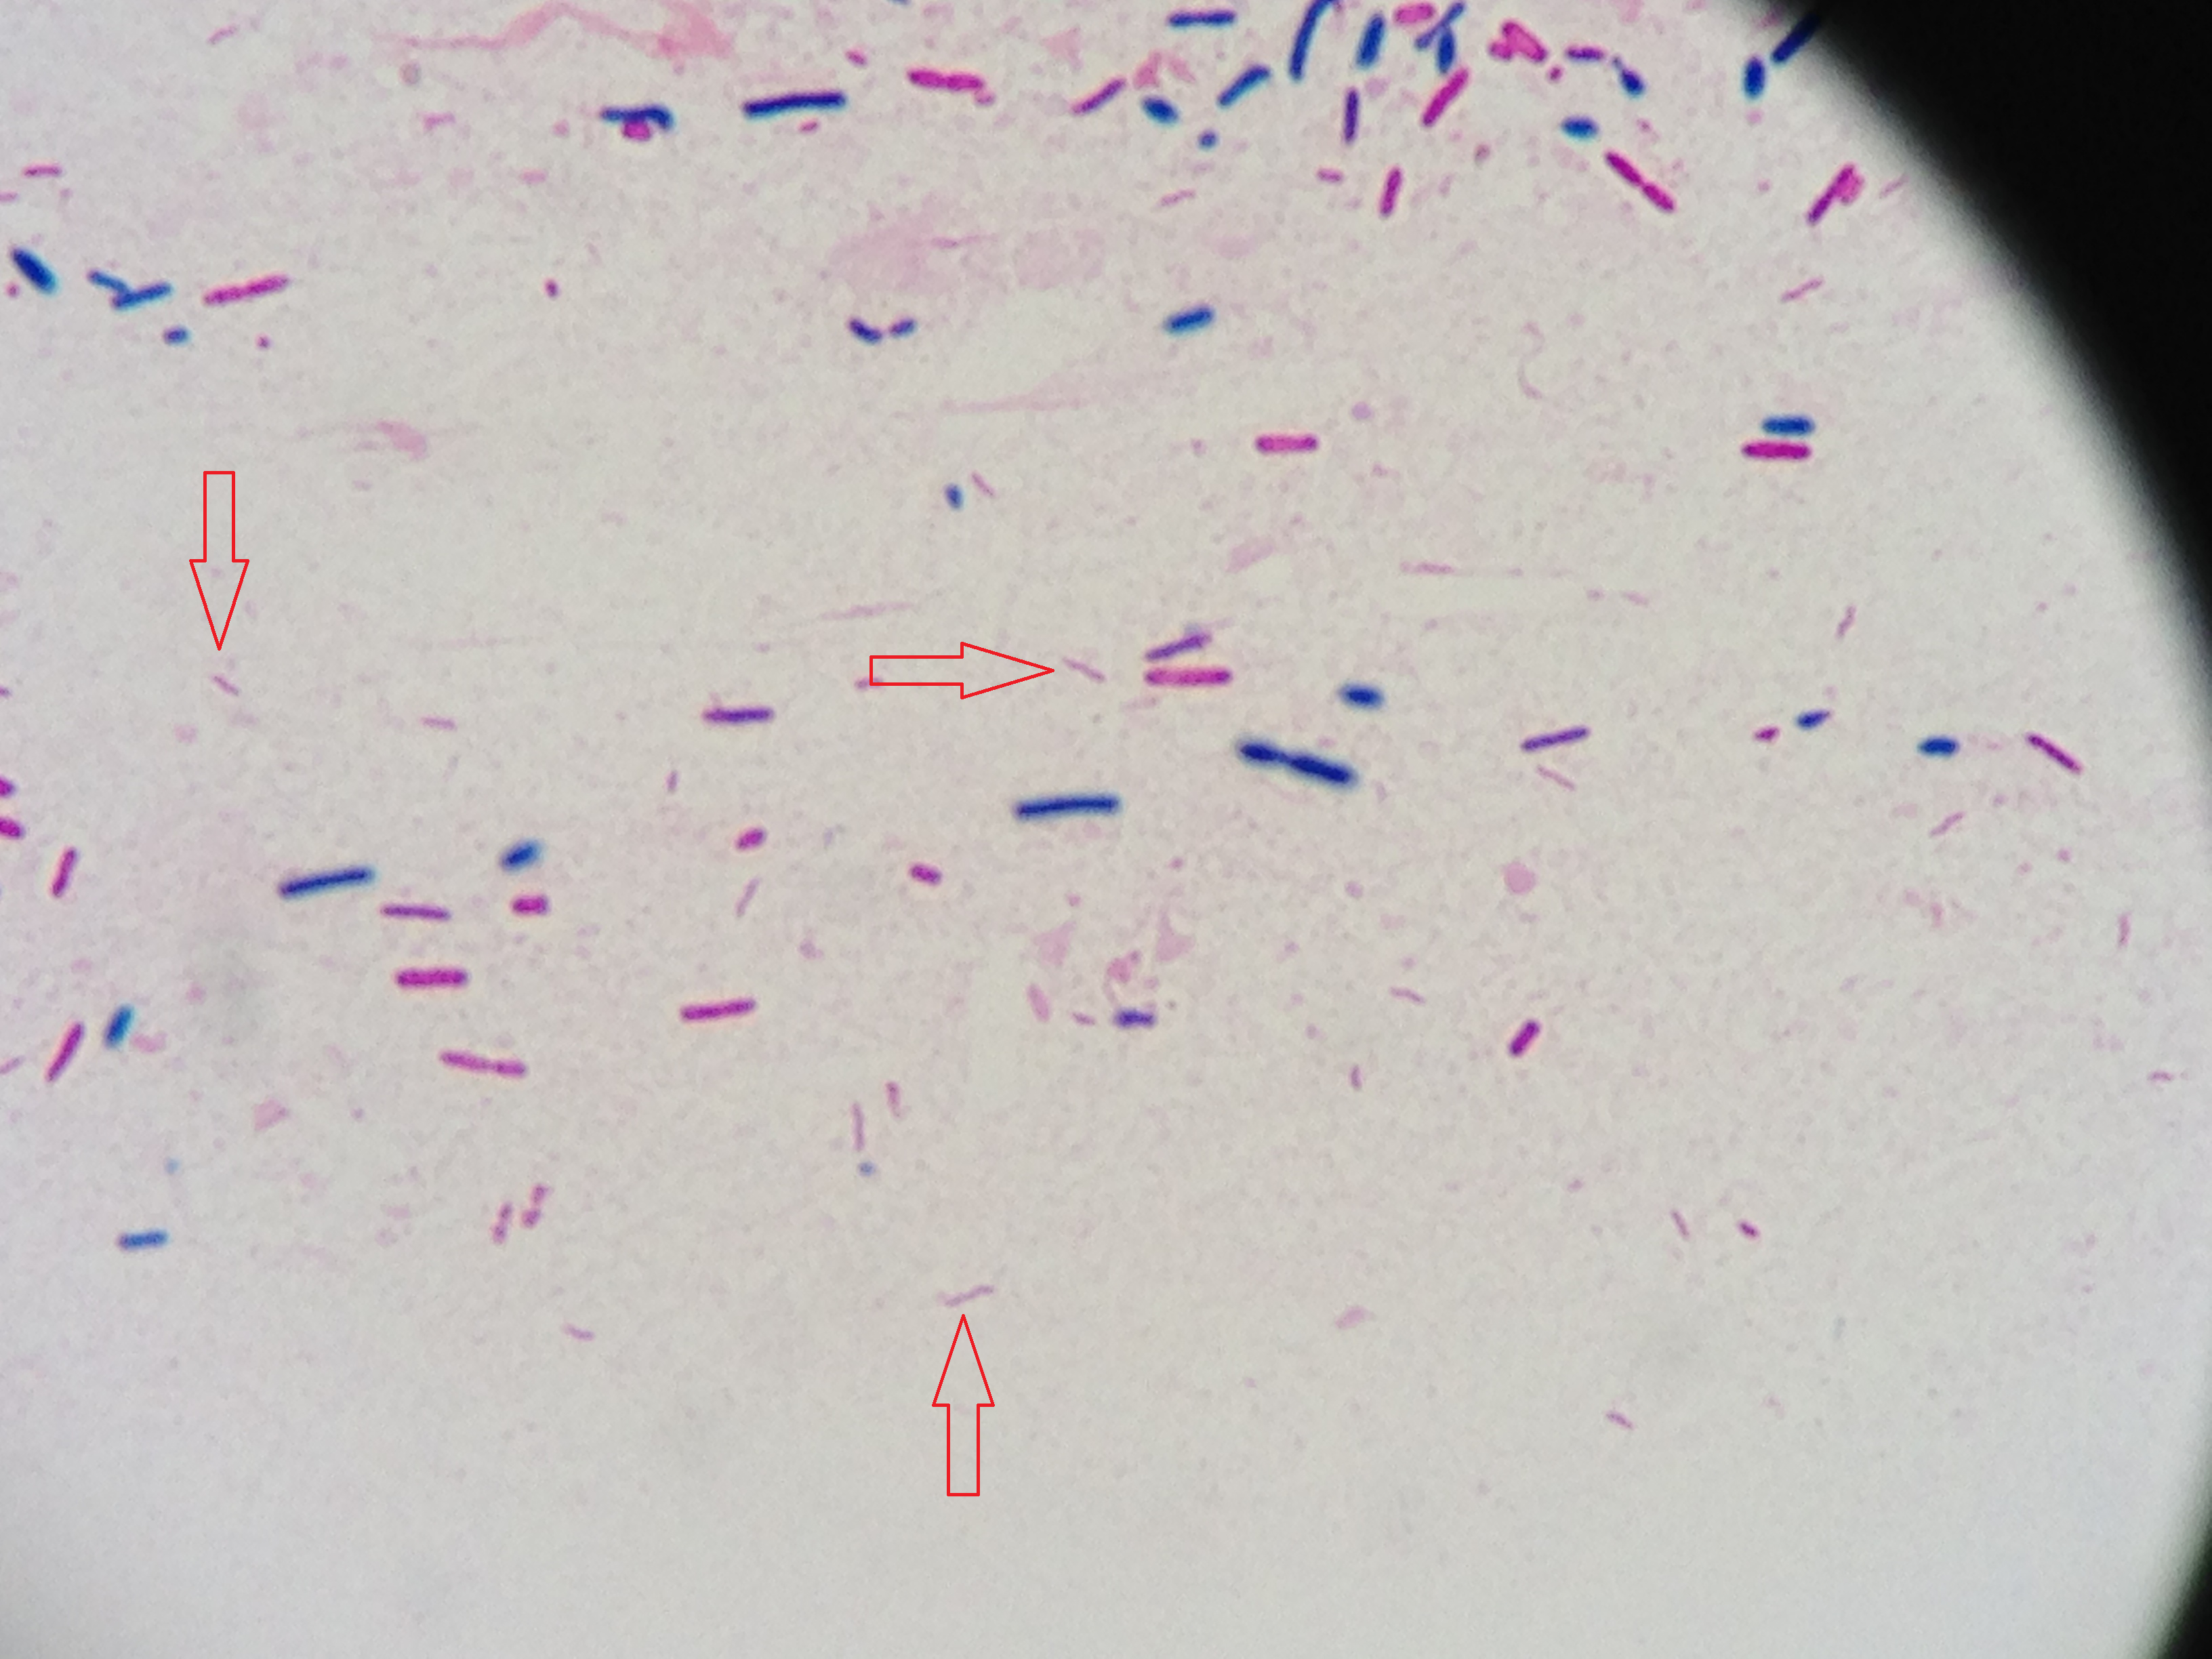 Campylobacter jejuni〔カンピロバクター〕